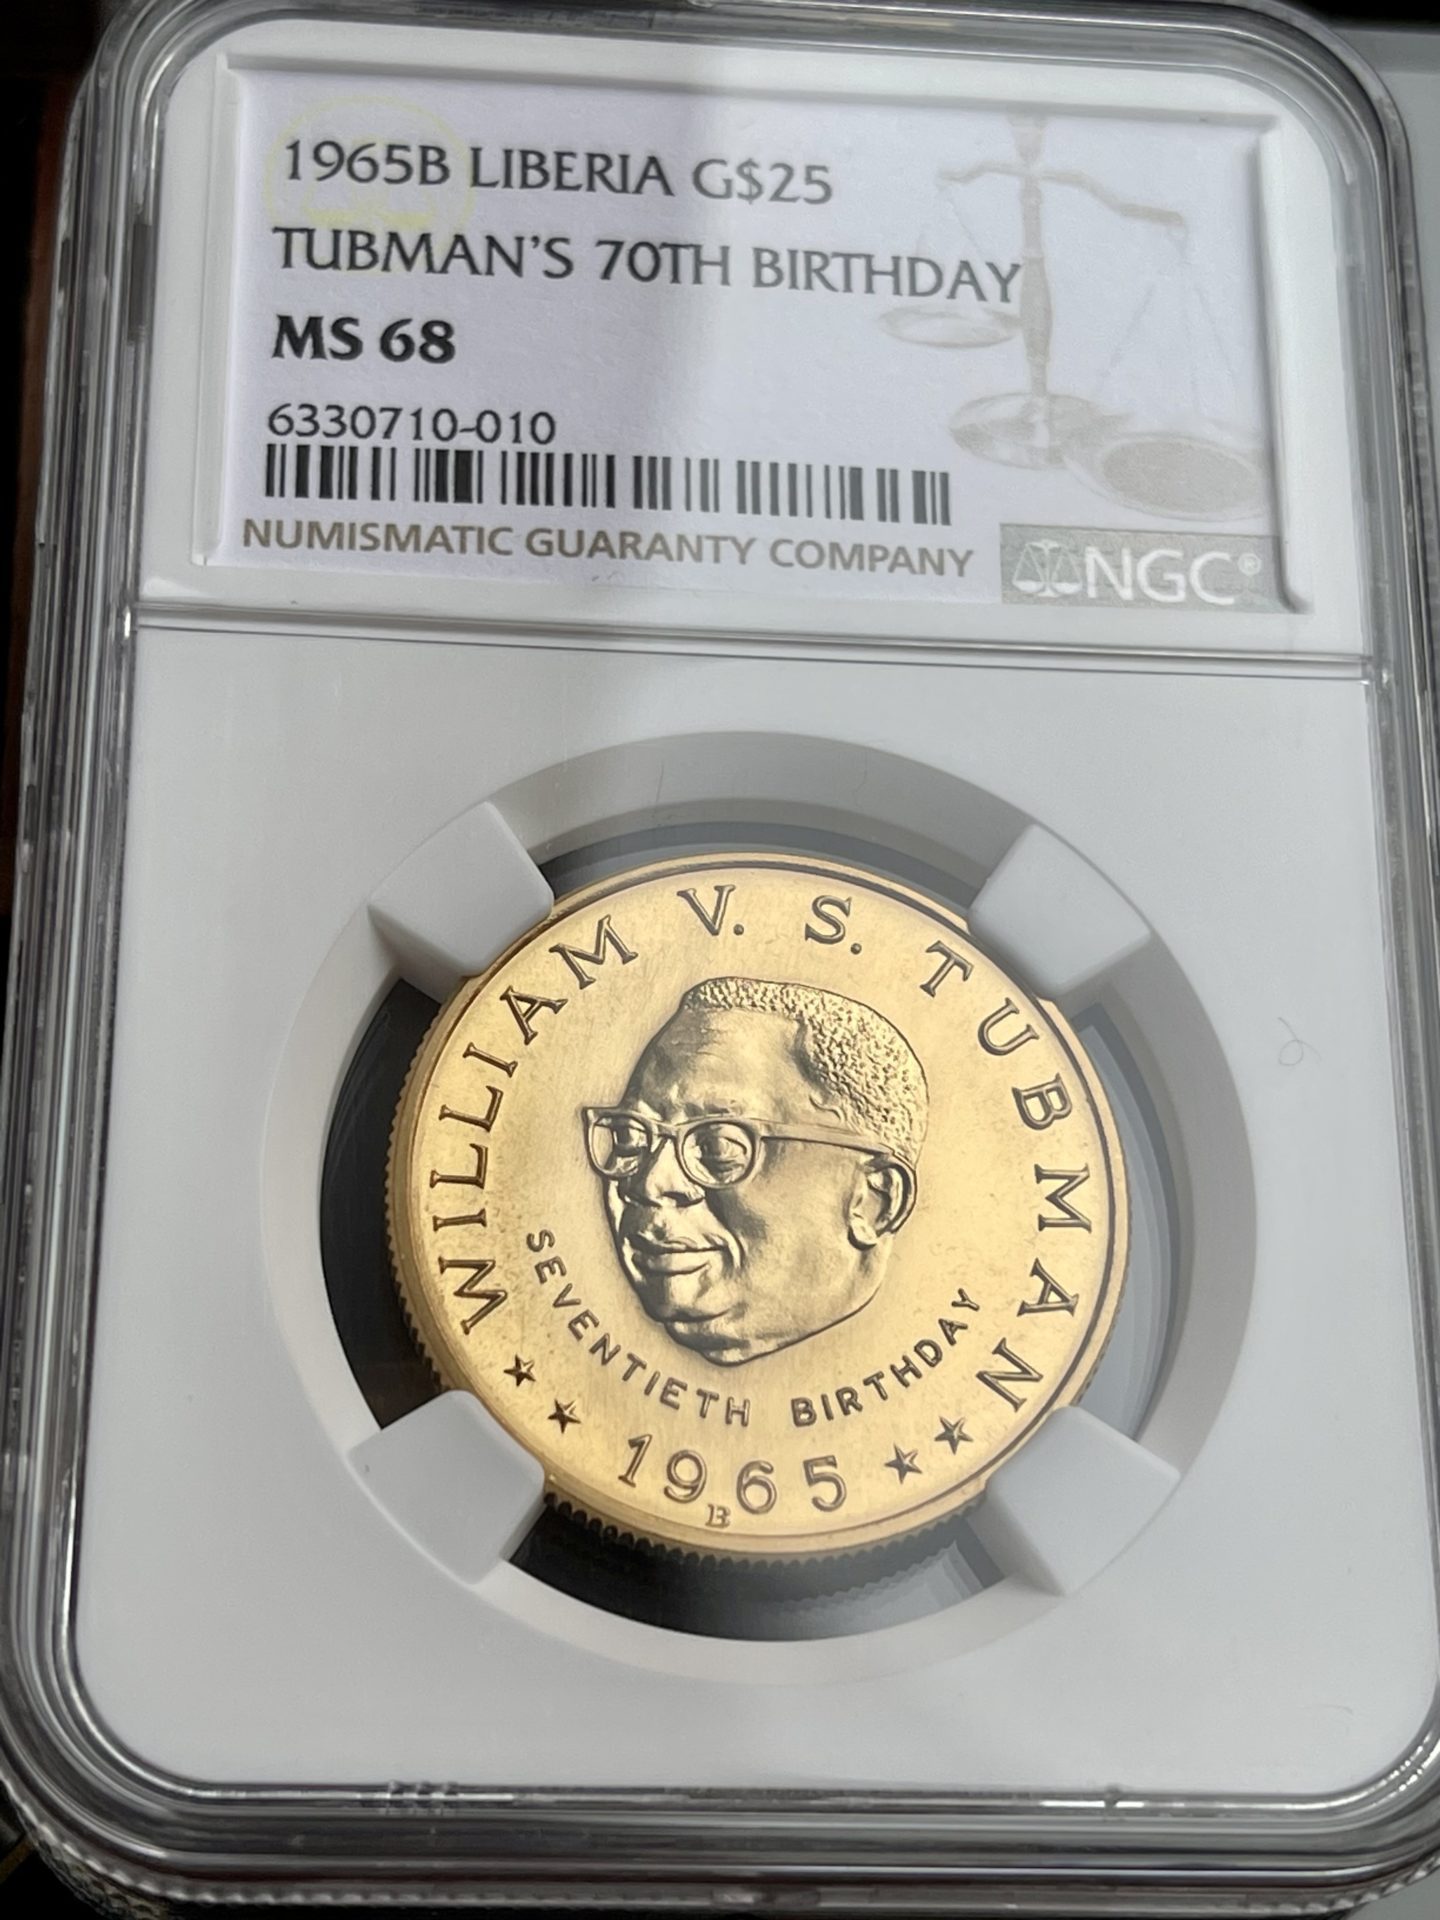 Либерия — золото за 25 долларов — 1965 B — Табман — 70 лет со дня рождения — MGC MS68